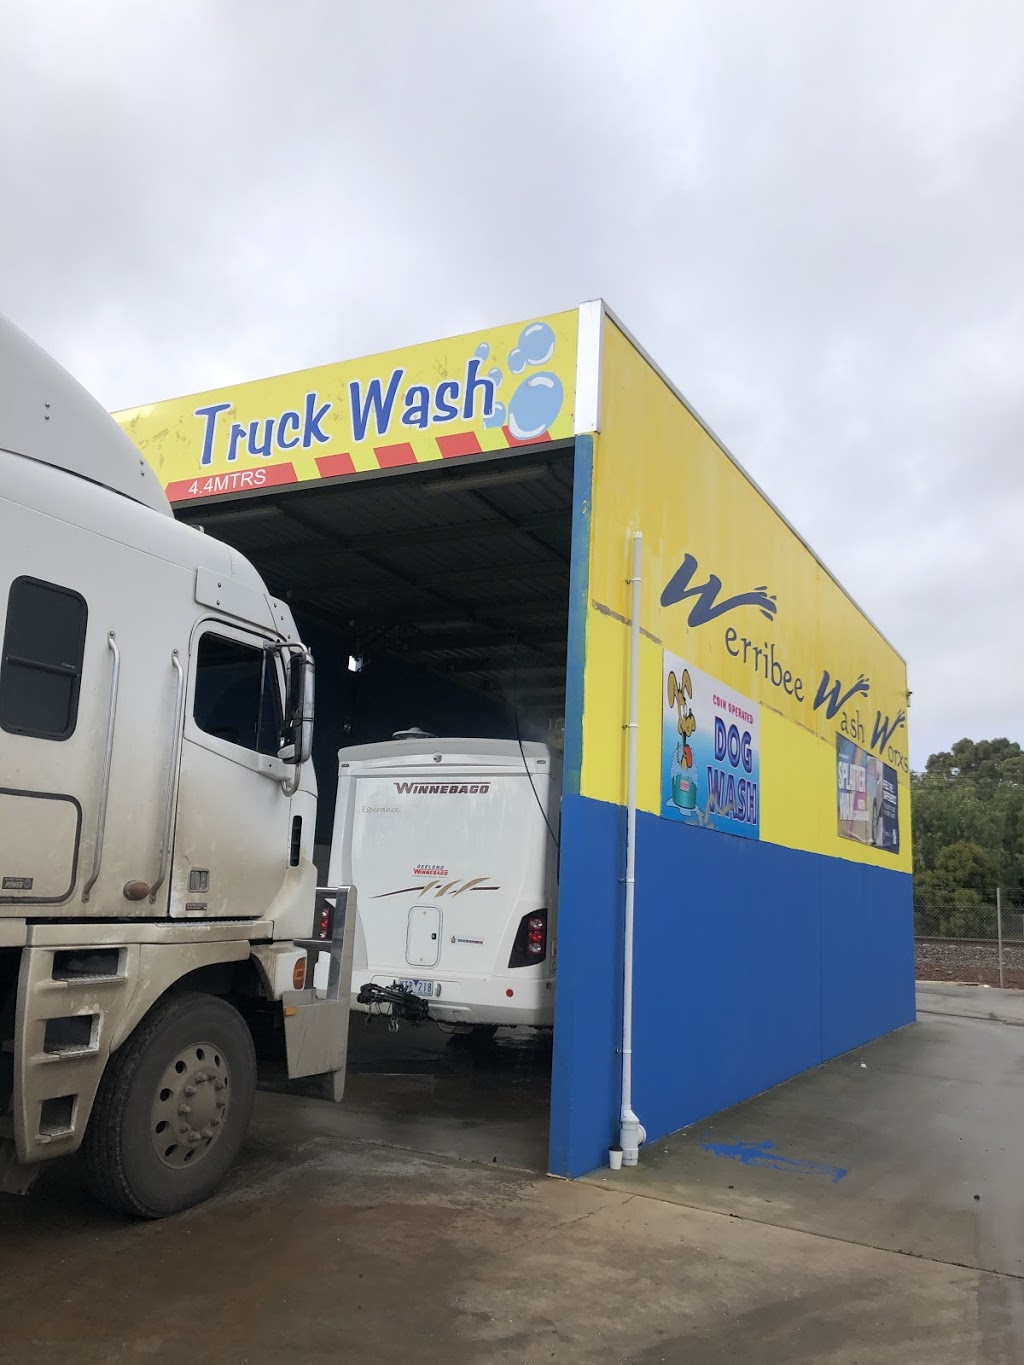 Werribee Wash Worx | car wash | 147 Railway Ave, Werribee VIC 3030, Australia | 0490755173 OR +61 490 755 173